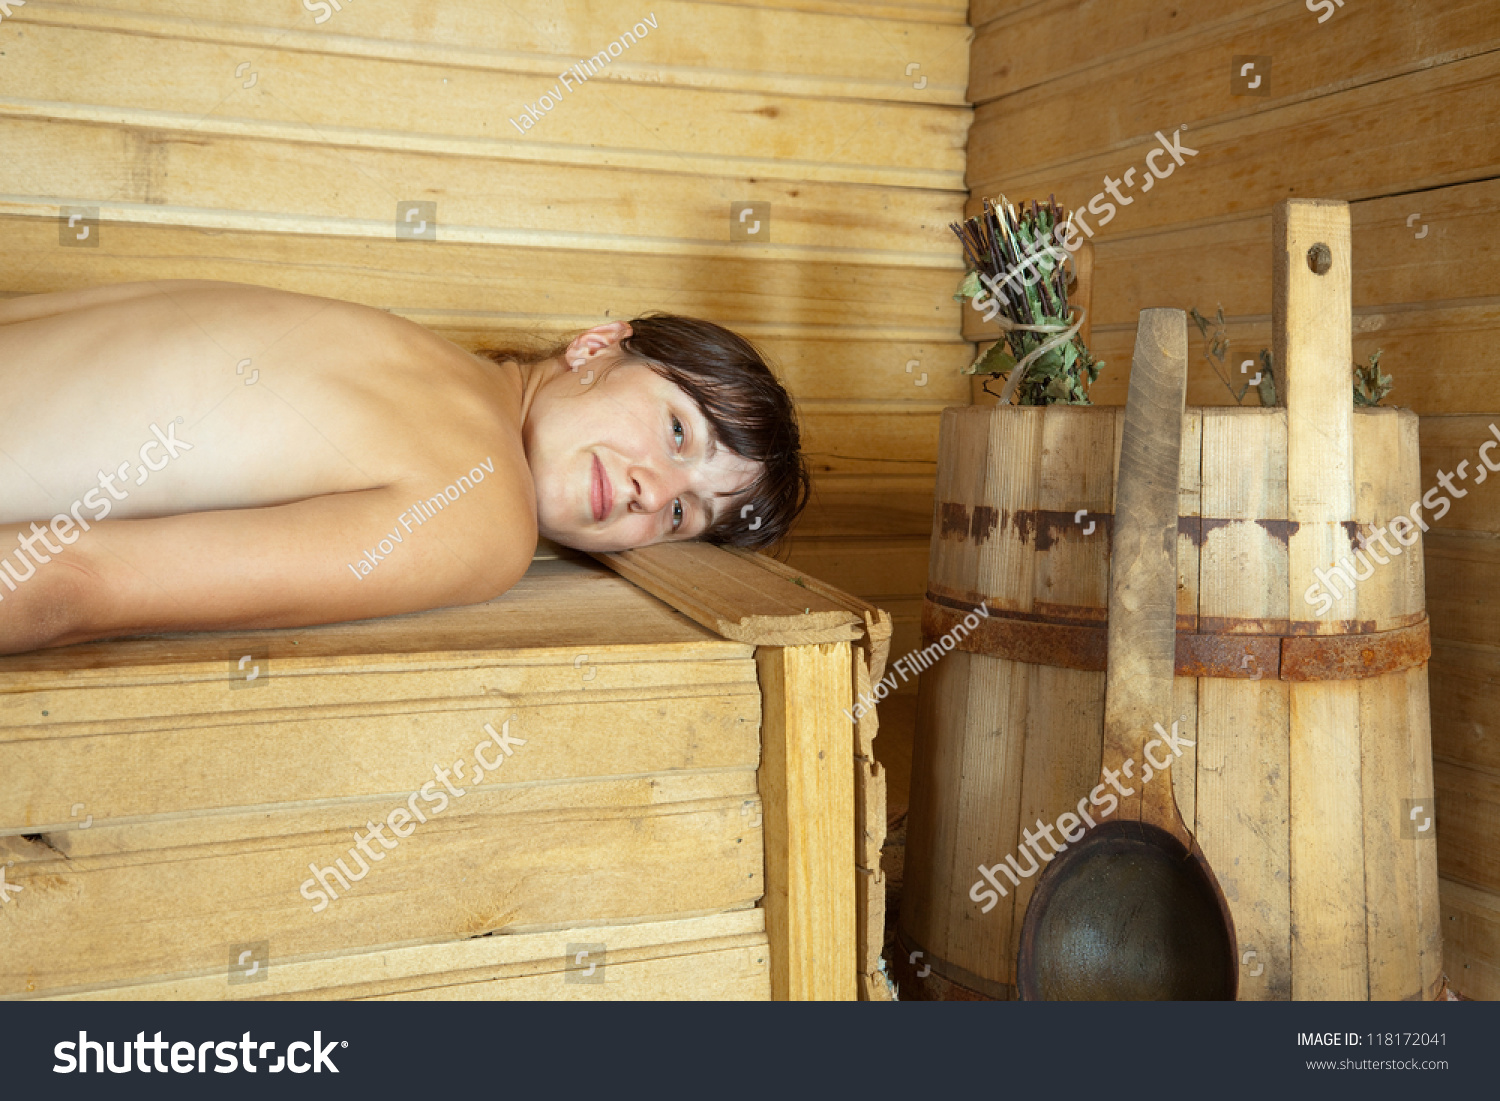 мыться в бане вместе с детьми голыми фото 11